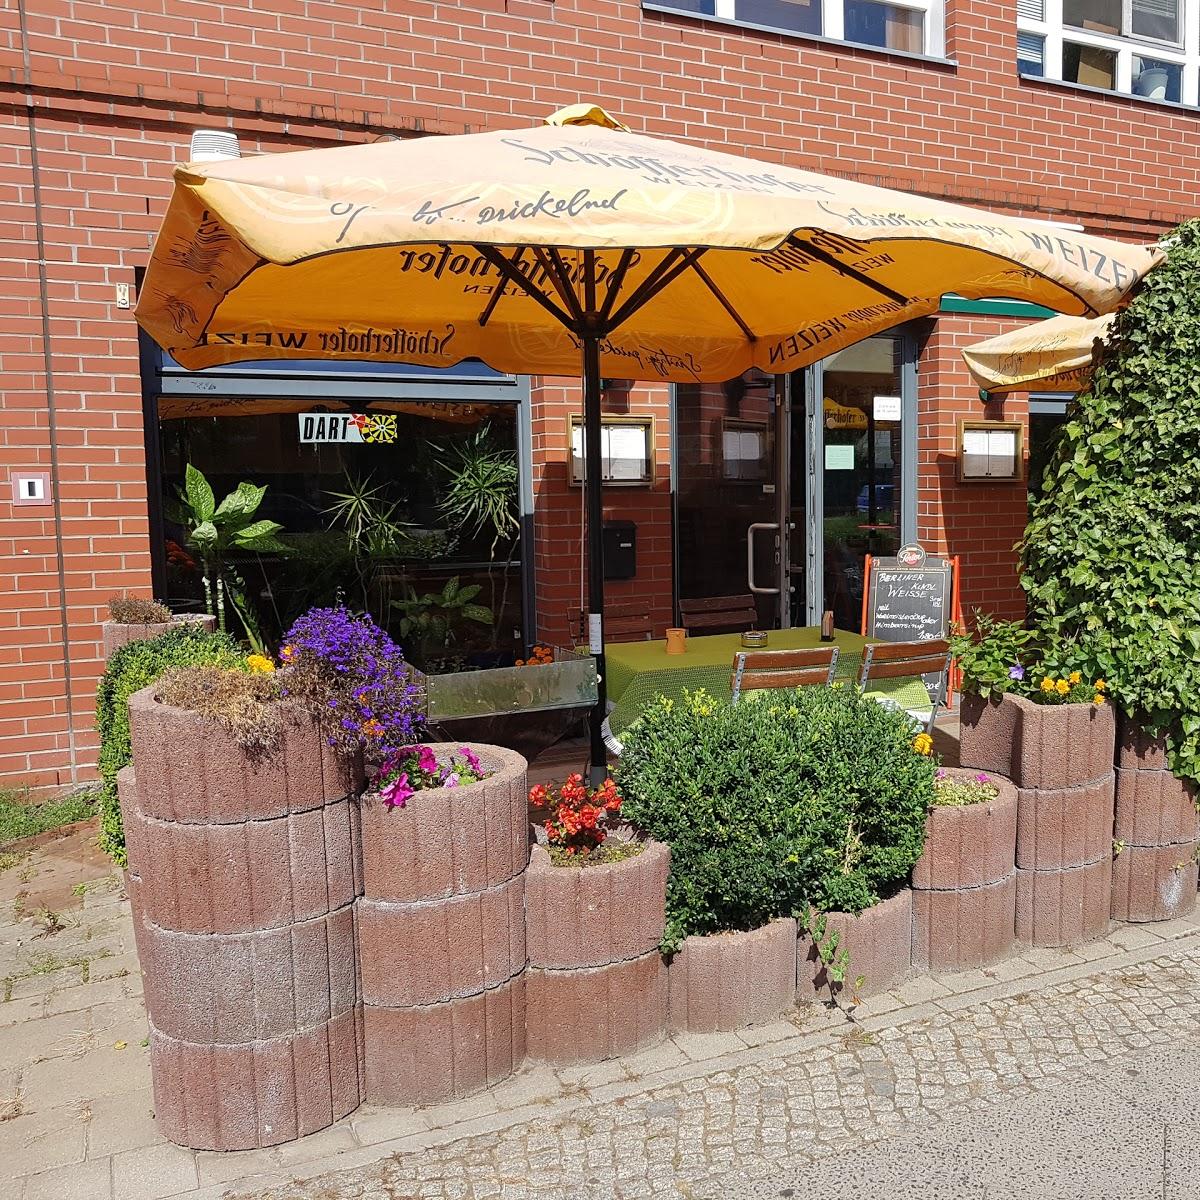 Restaurant "Männerhort" in Berlin